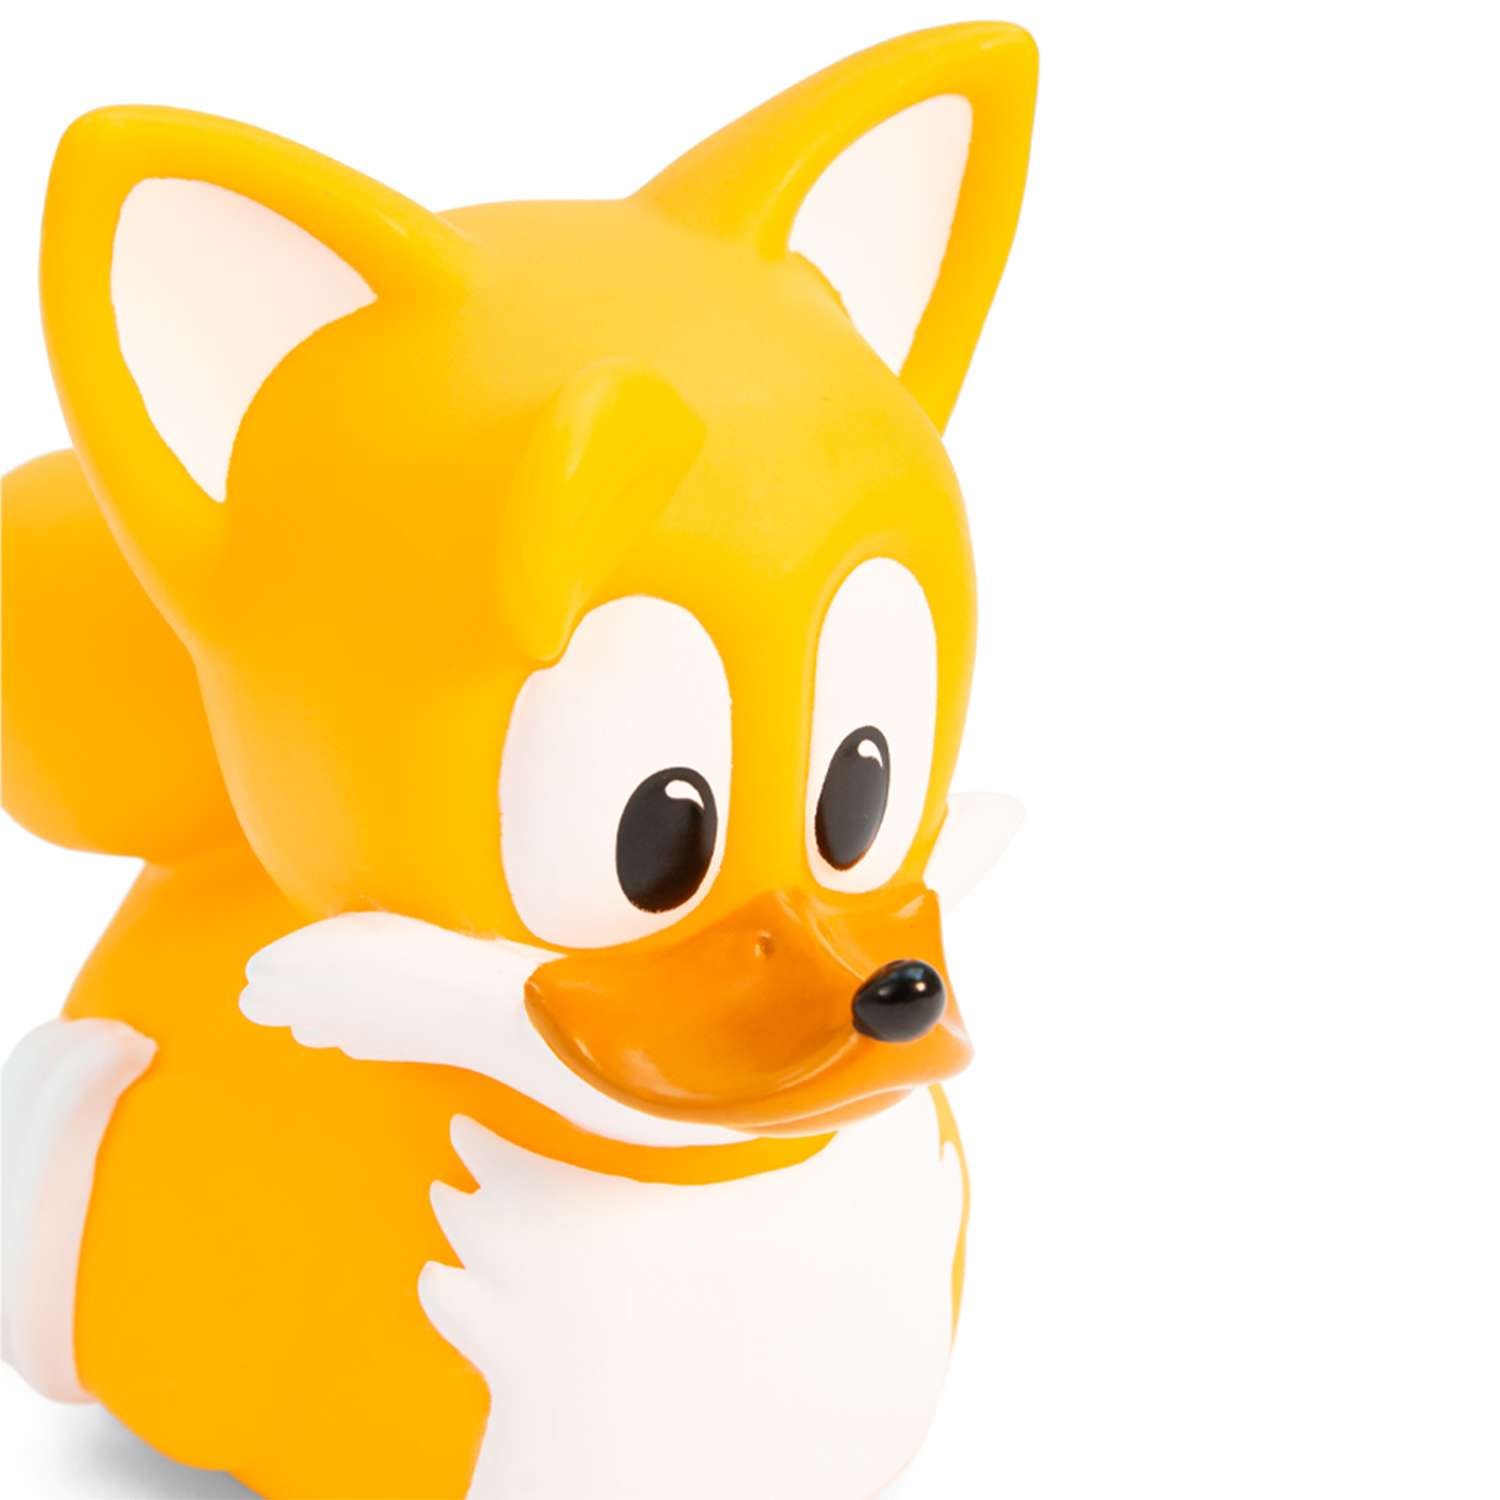 Фигурка Sonic The Hedgehog Tails - фото 3